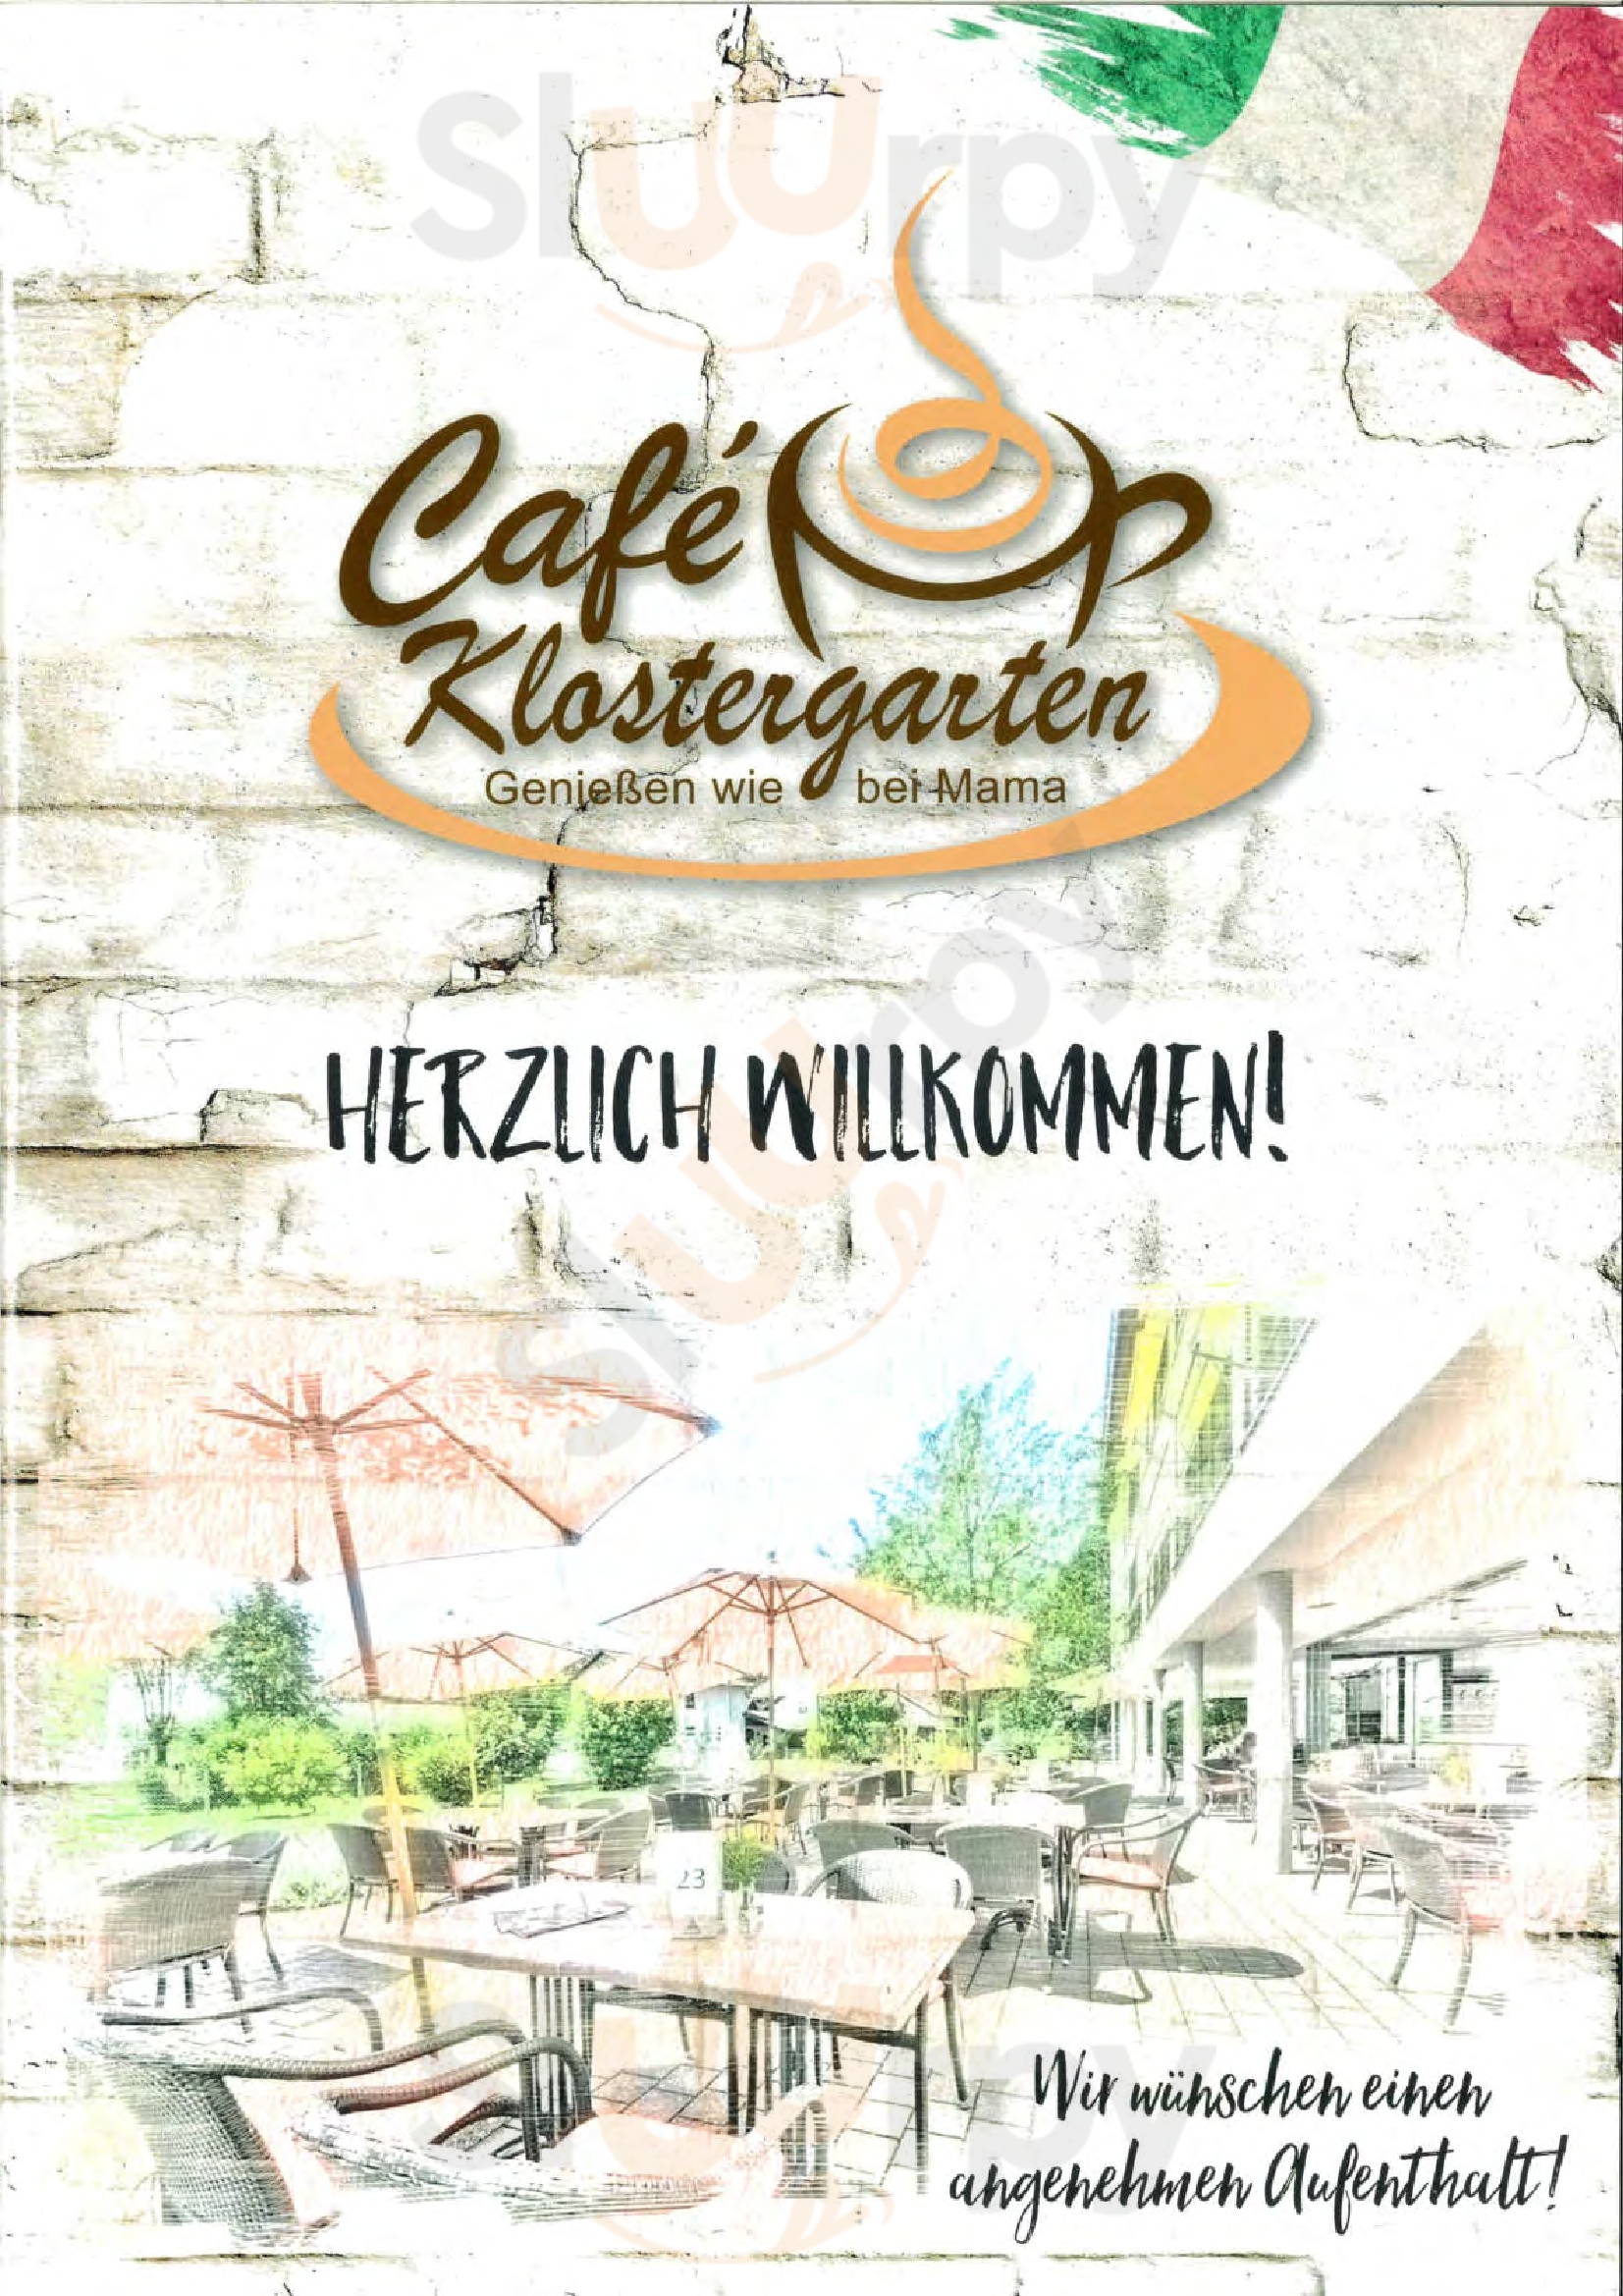 Cafe Klostergarten Rheinmünster Menu - 1